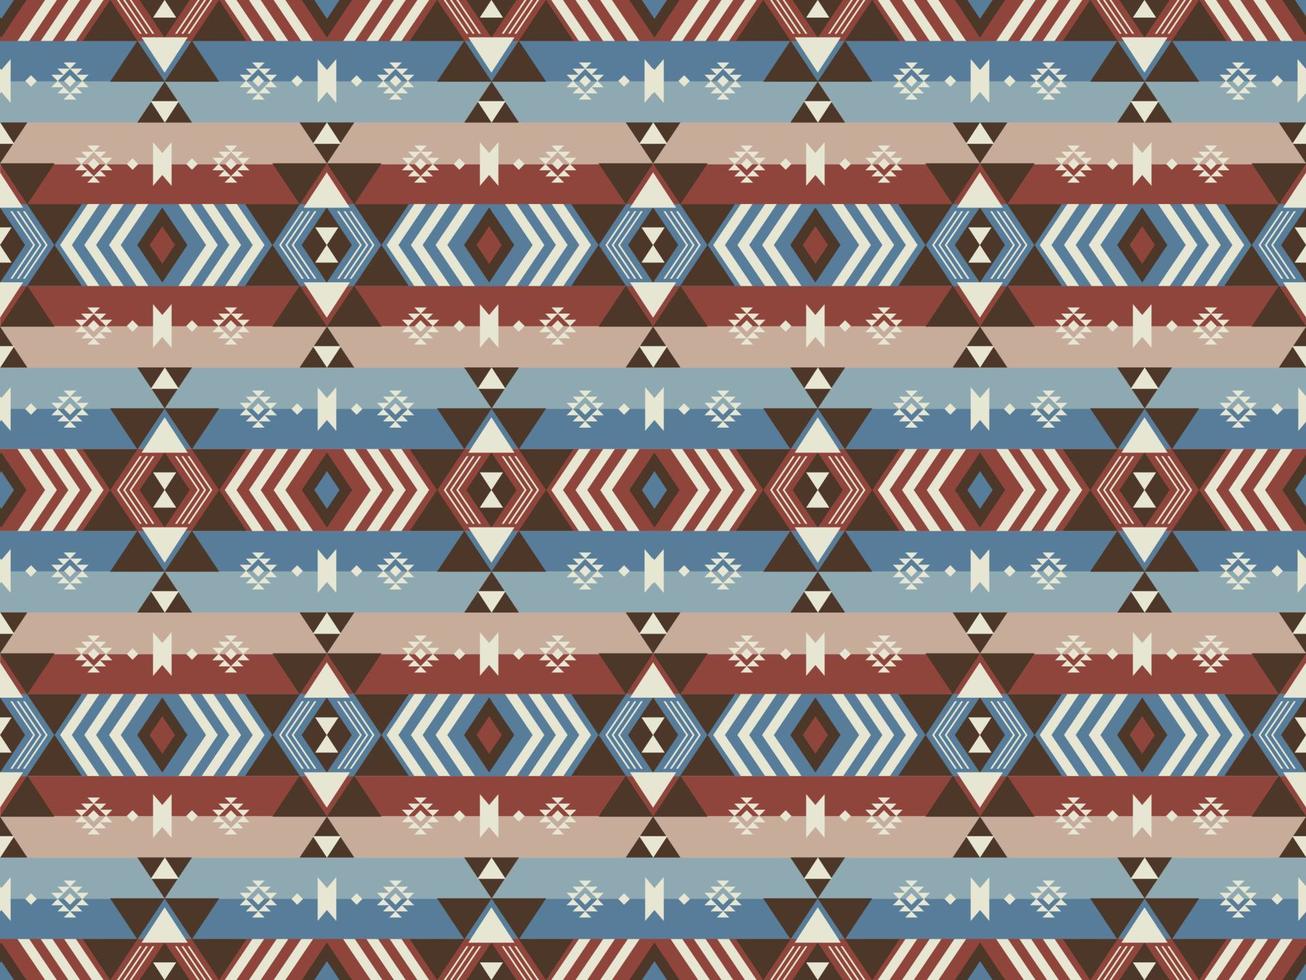 buntes ethnisches muster der weinlese. ethnischer Südwesten bunte Vintage-Streifen geometrische aztekische Navajo-Form nahtloser Musterhintergrund. Verwendung für Stoffe, Heimdekorationselemente, Polster, Verpackungen. vektor